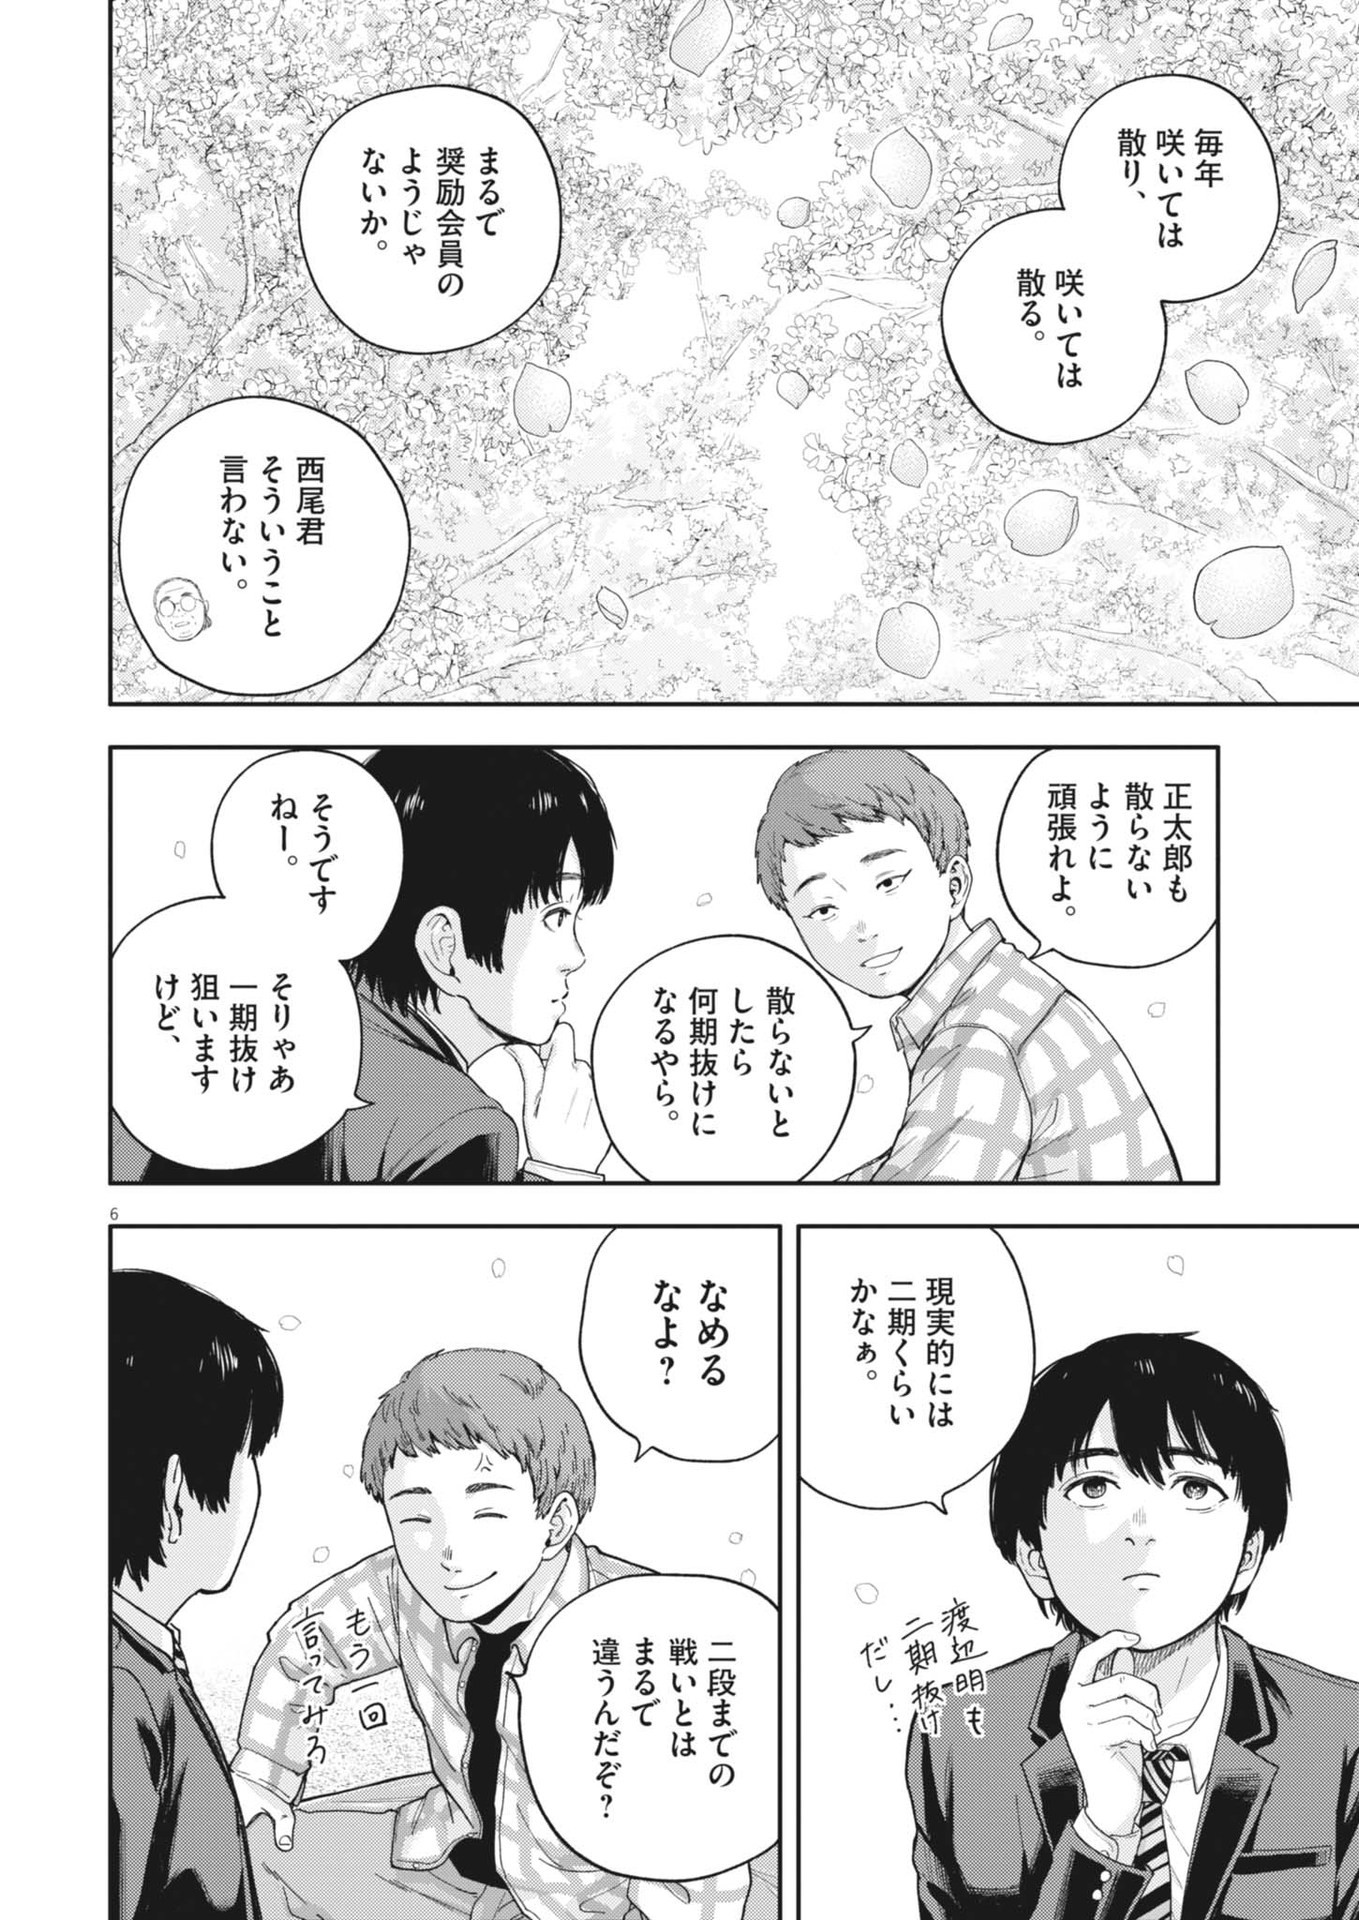 Yumenashi-sensei no Shinroshidou - Chapter 28 - Page 6